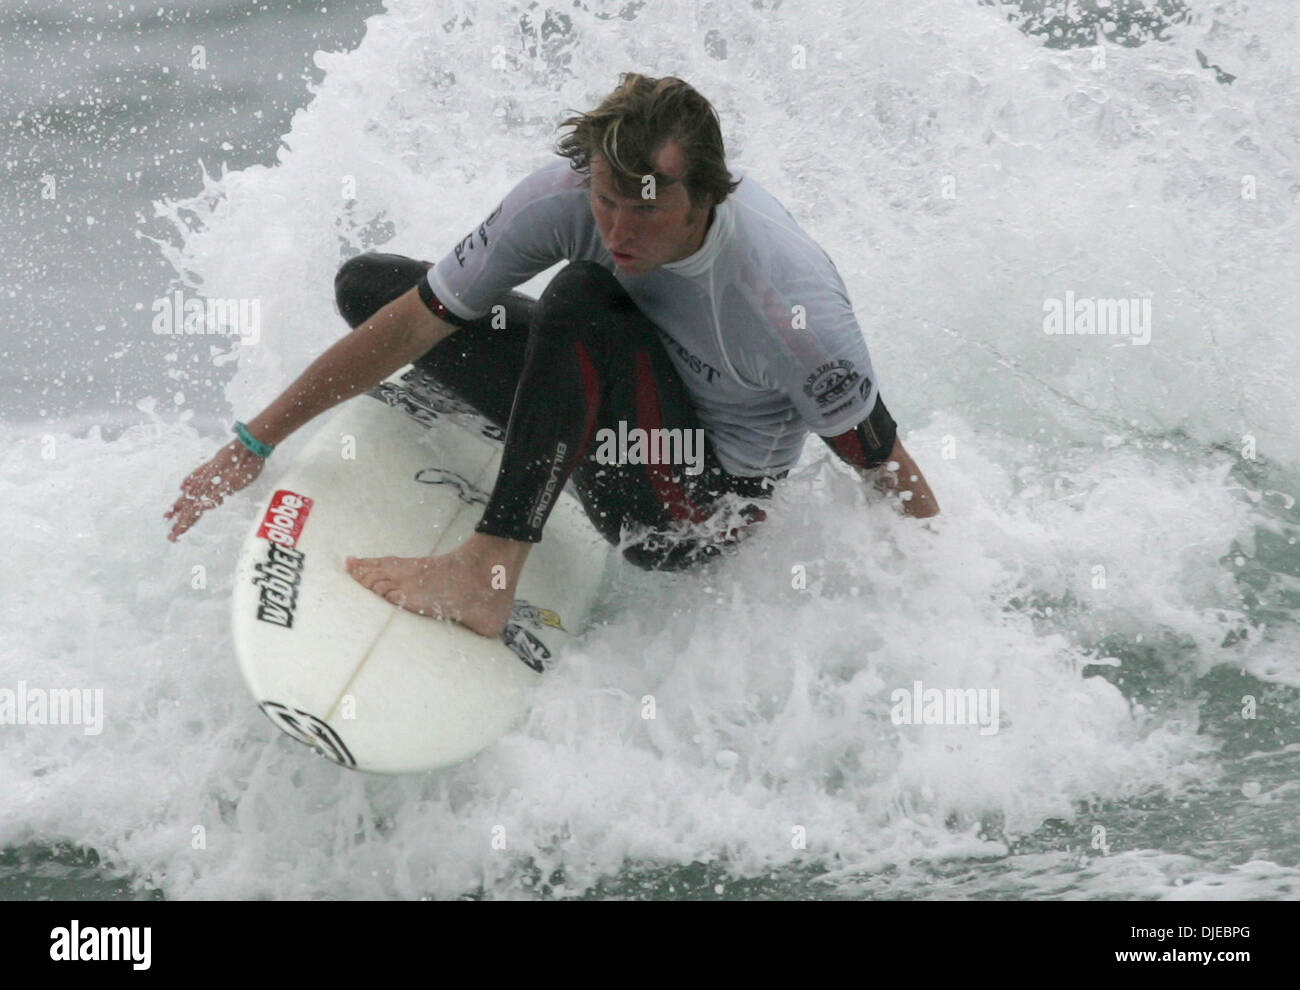 Aug 01, 2004; Huntington Beach, CA, EE.UU.; AUS surfer TAJ BURROW tras los cuartos de final en el HONDA US Open 2004 campeonatos de surf en Huntington Beach. Taj Burrow de Australia ganó el evento corto de placa. Foto de stock